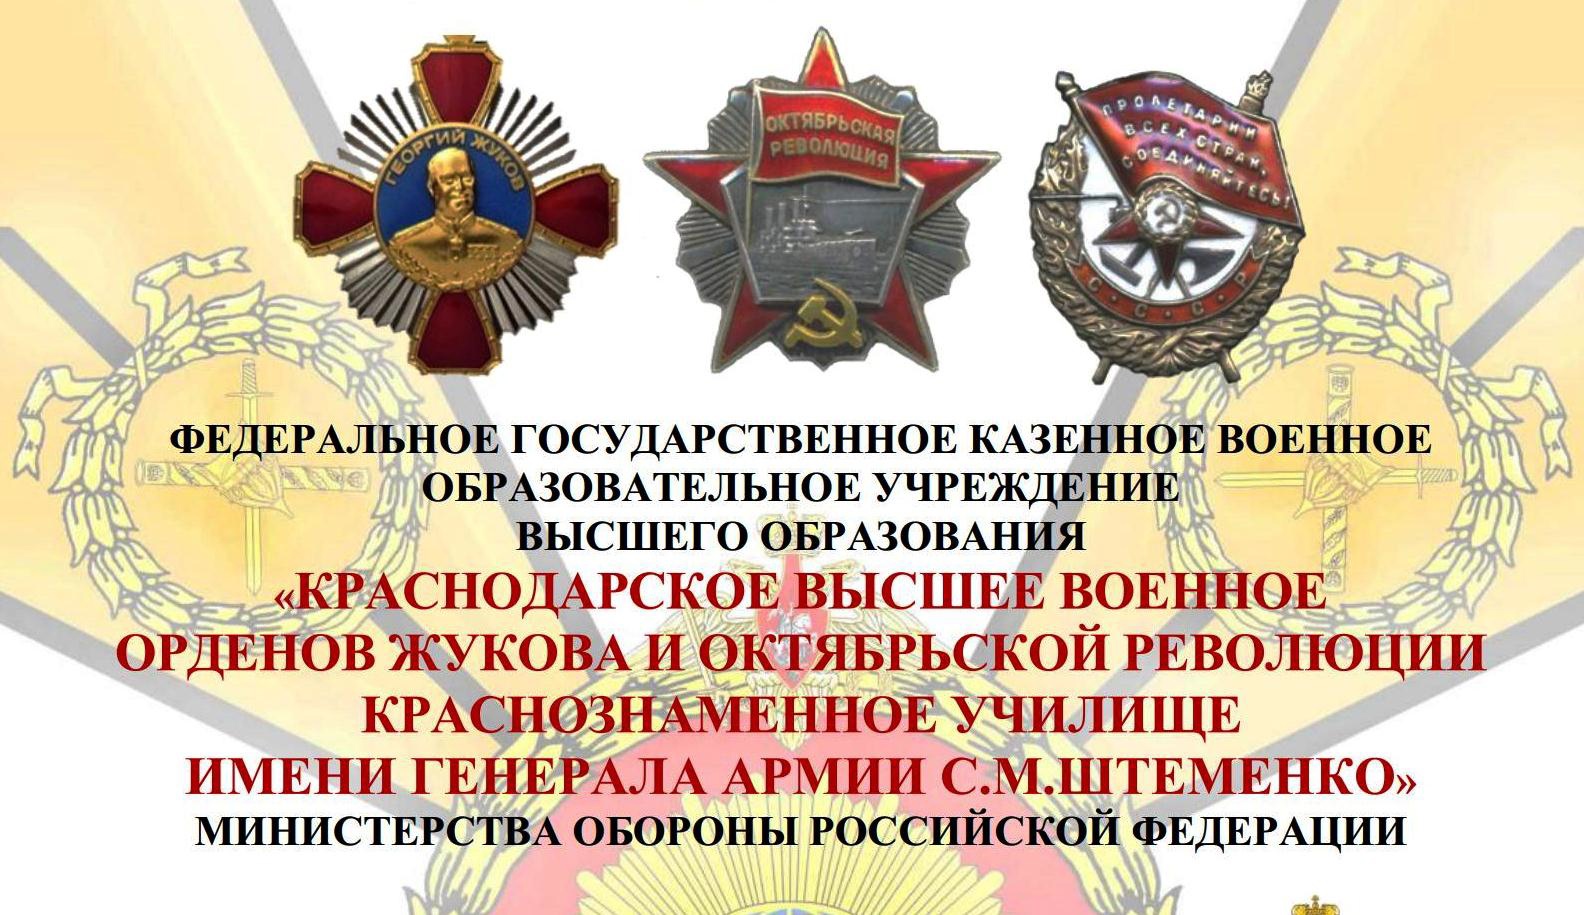 Краснодарское высшее военное училище имени генерала армии С.М. Штеменко.